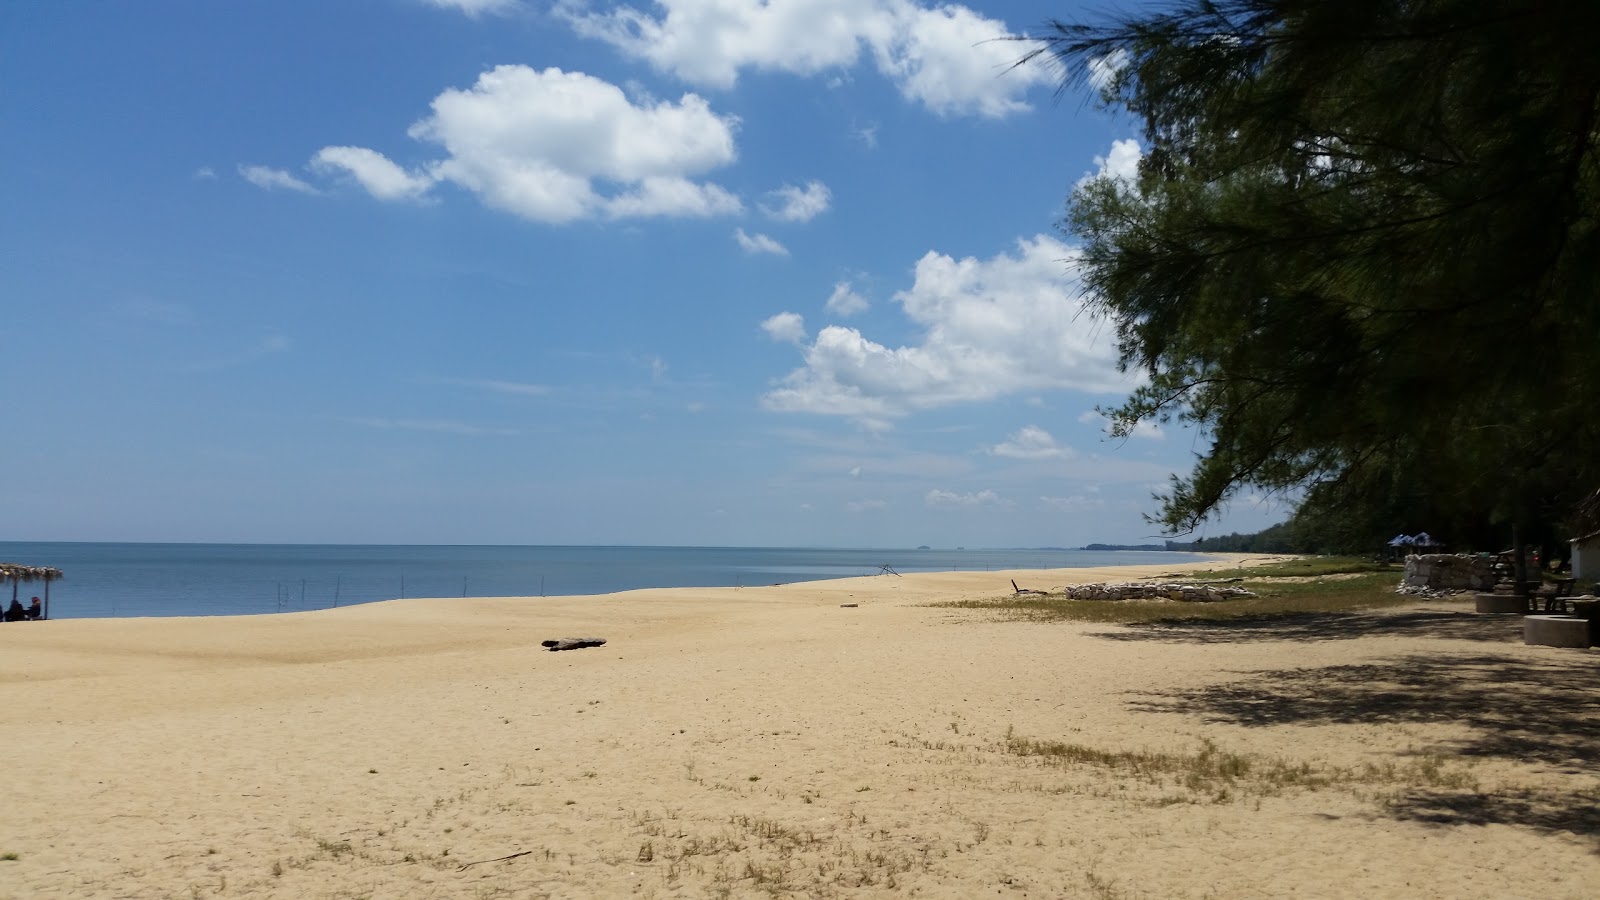 Zdjęcie Rantau Panjang Beach z powierzchnią jasny piasek